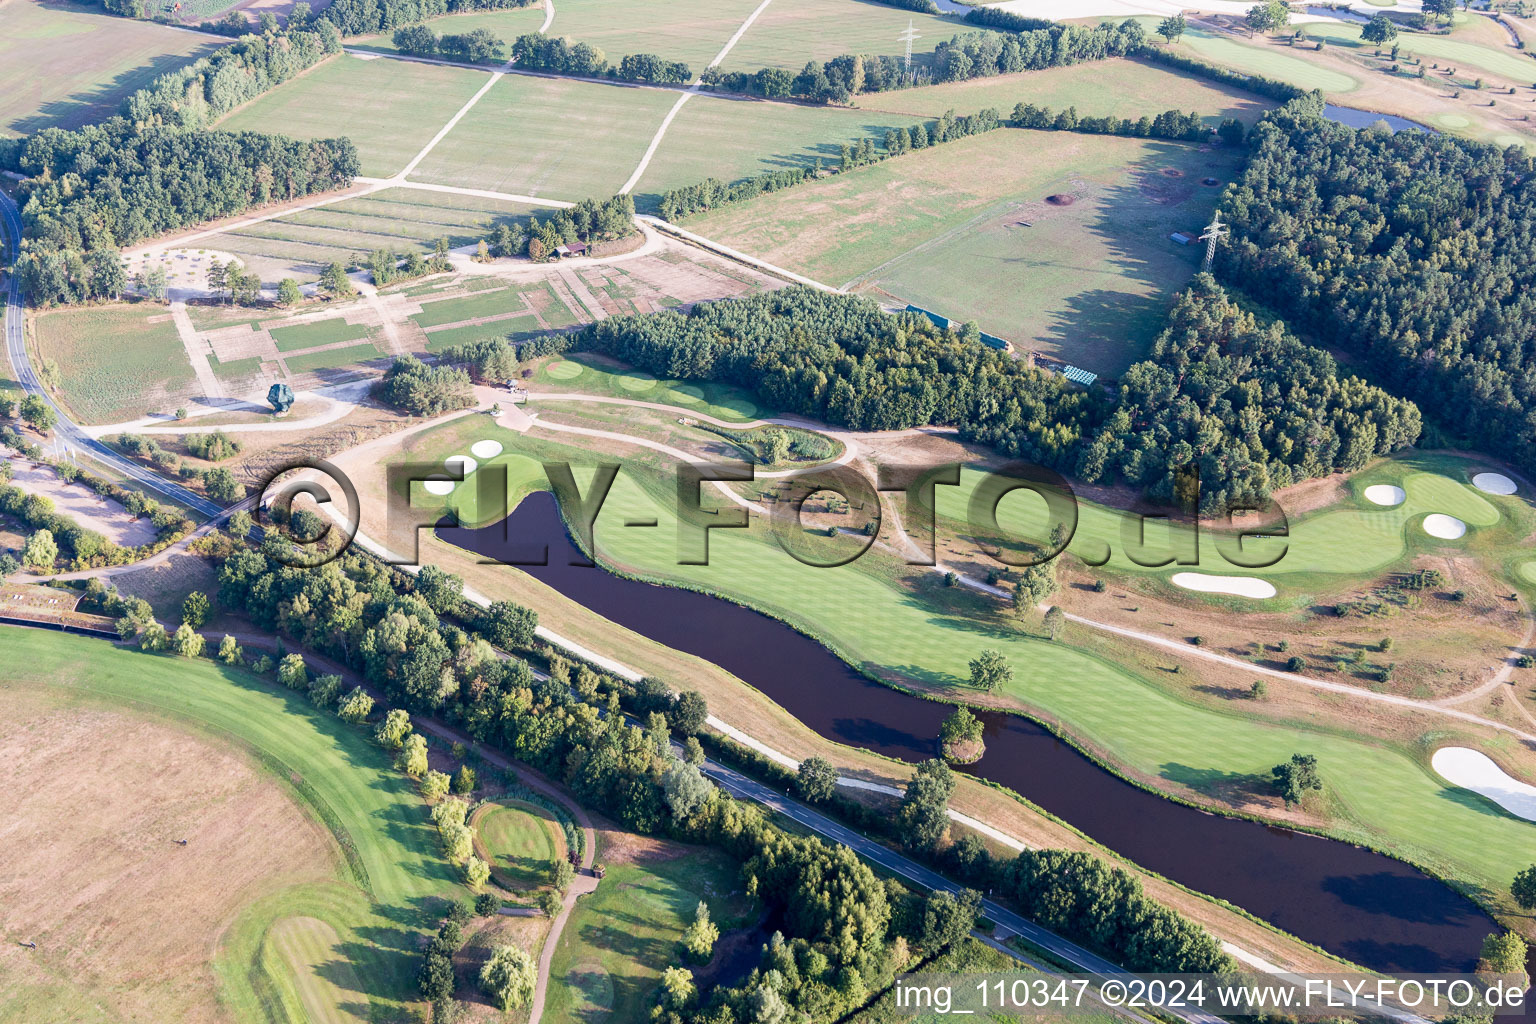 Vue oblique de Terrain du parcours de golf Green Eagle à Winsen (Luhe) dans le département Basse-Saxe, Allemagne